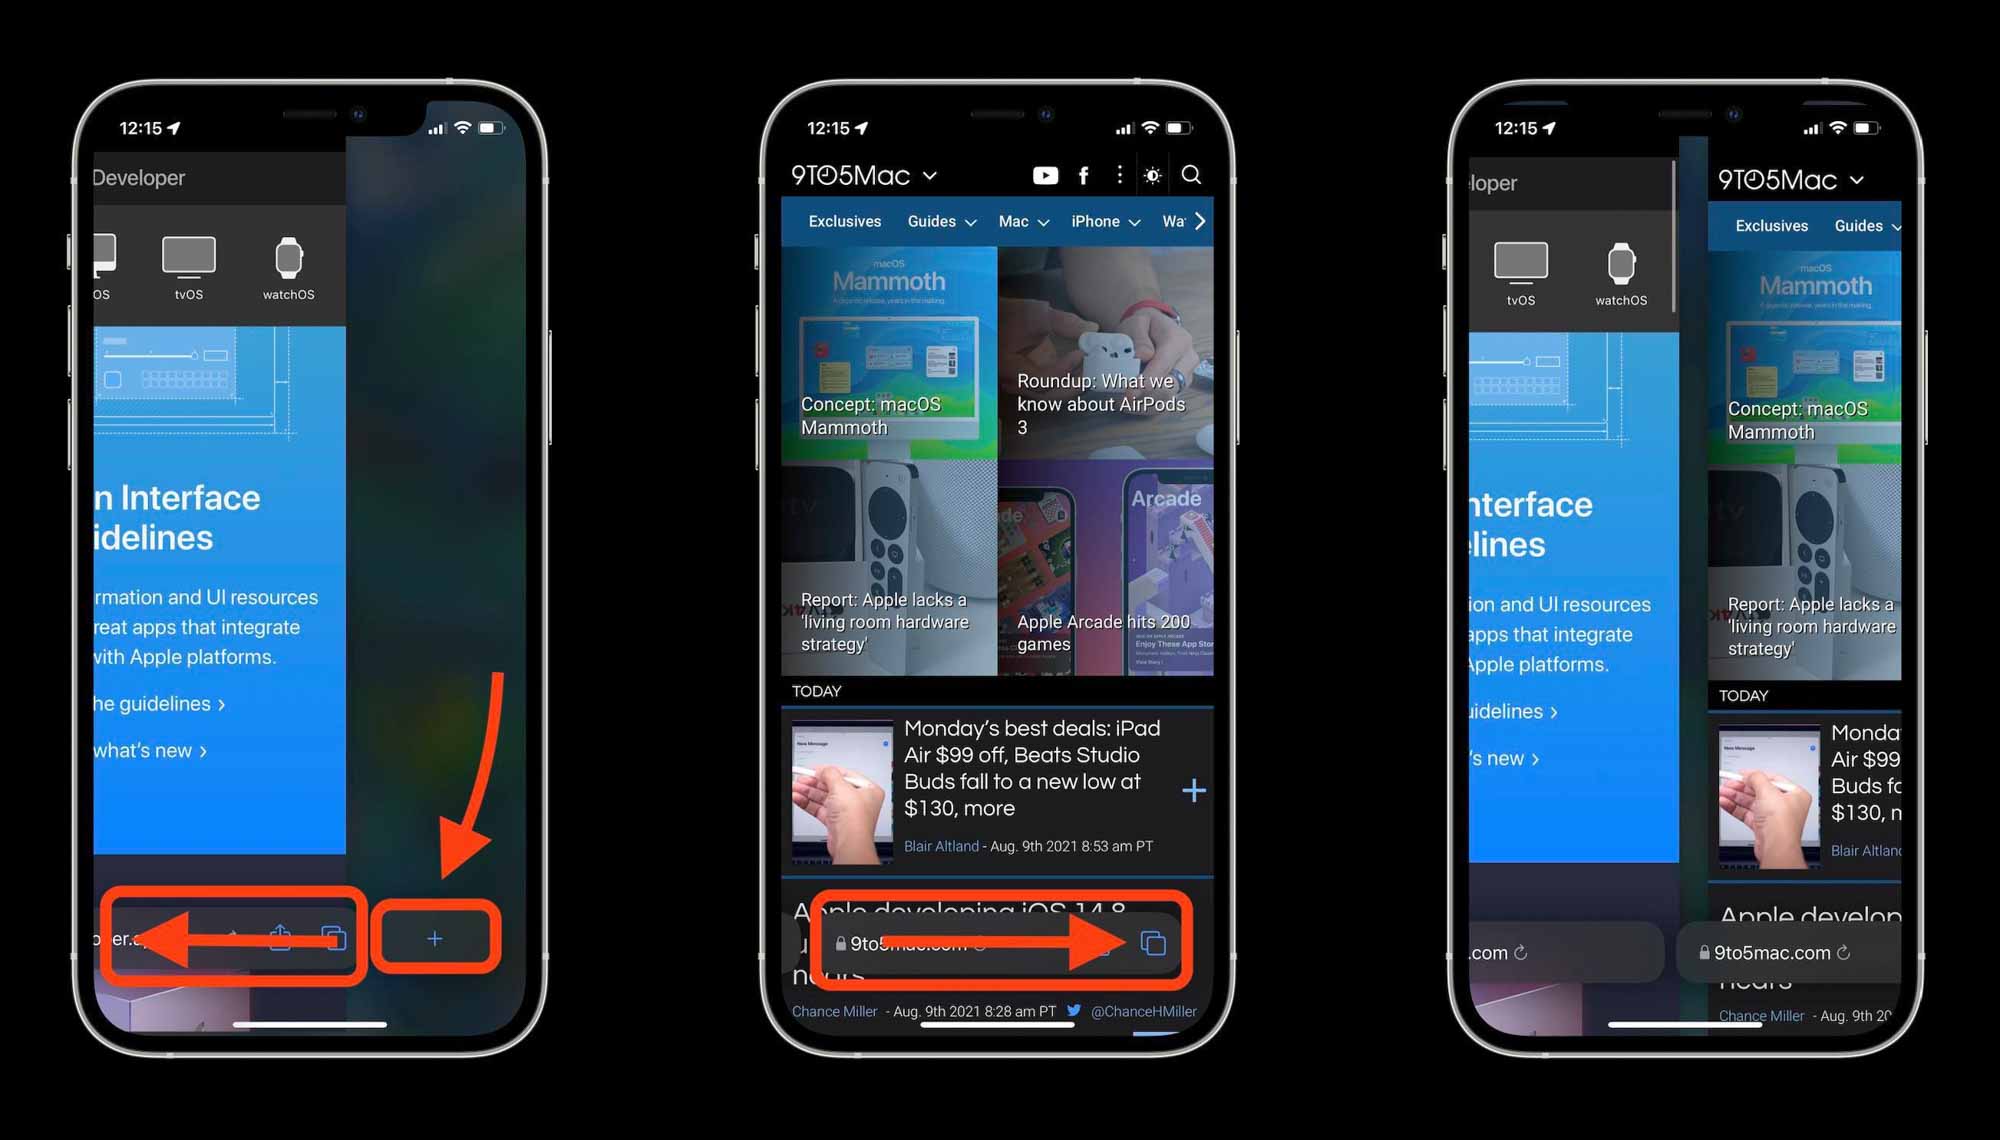 Как работает Safari в iOS 15 - проведите пальцем по поиску / вкладке панель для открытия новой страницы или переключения между открытыми страницами